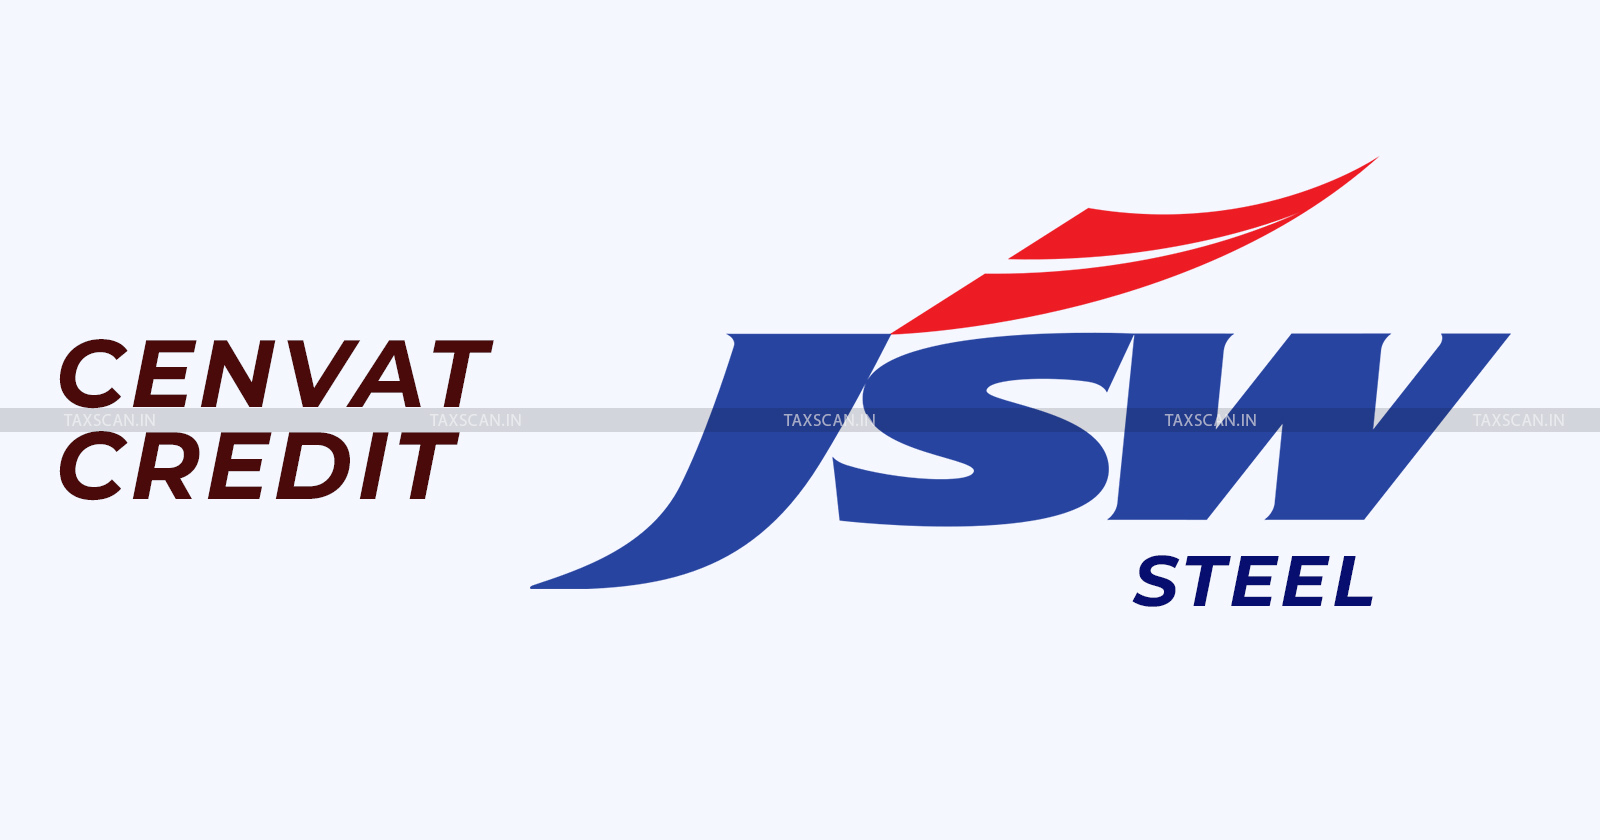 CESTAT - JSW Steel - CENVAT Credit - Duty of Customs - TAXSCAN